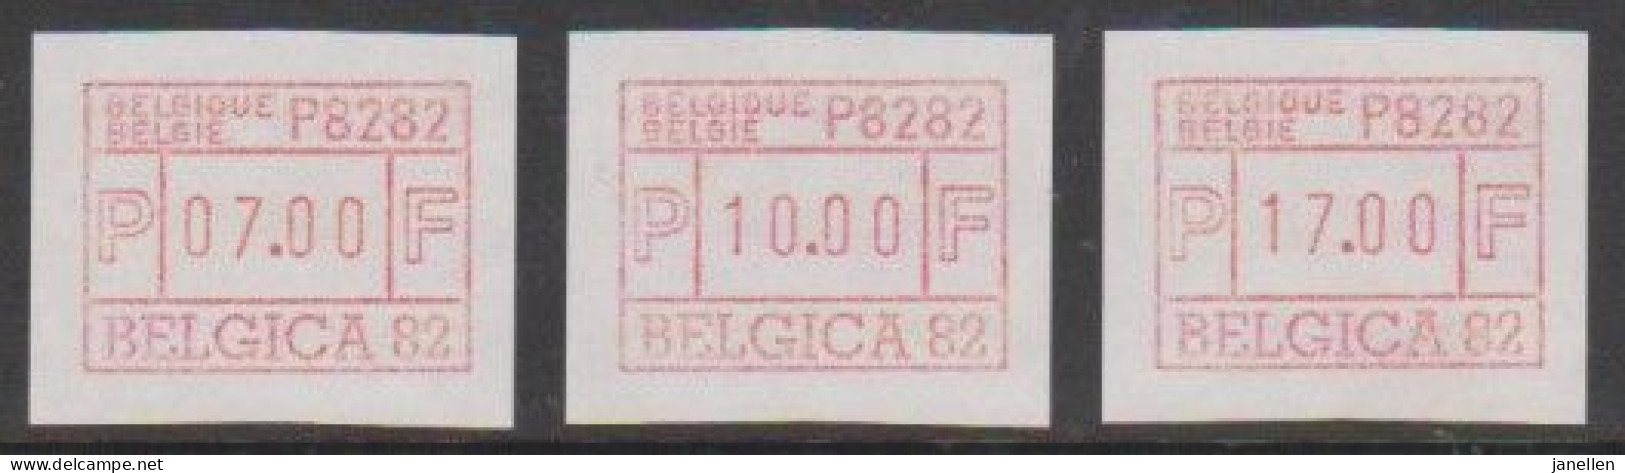 ATM 6A - Belgica 82 - Neufs